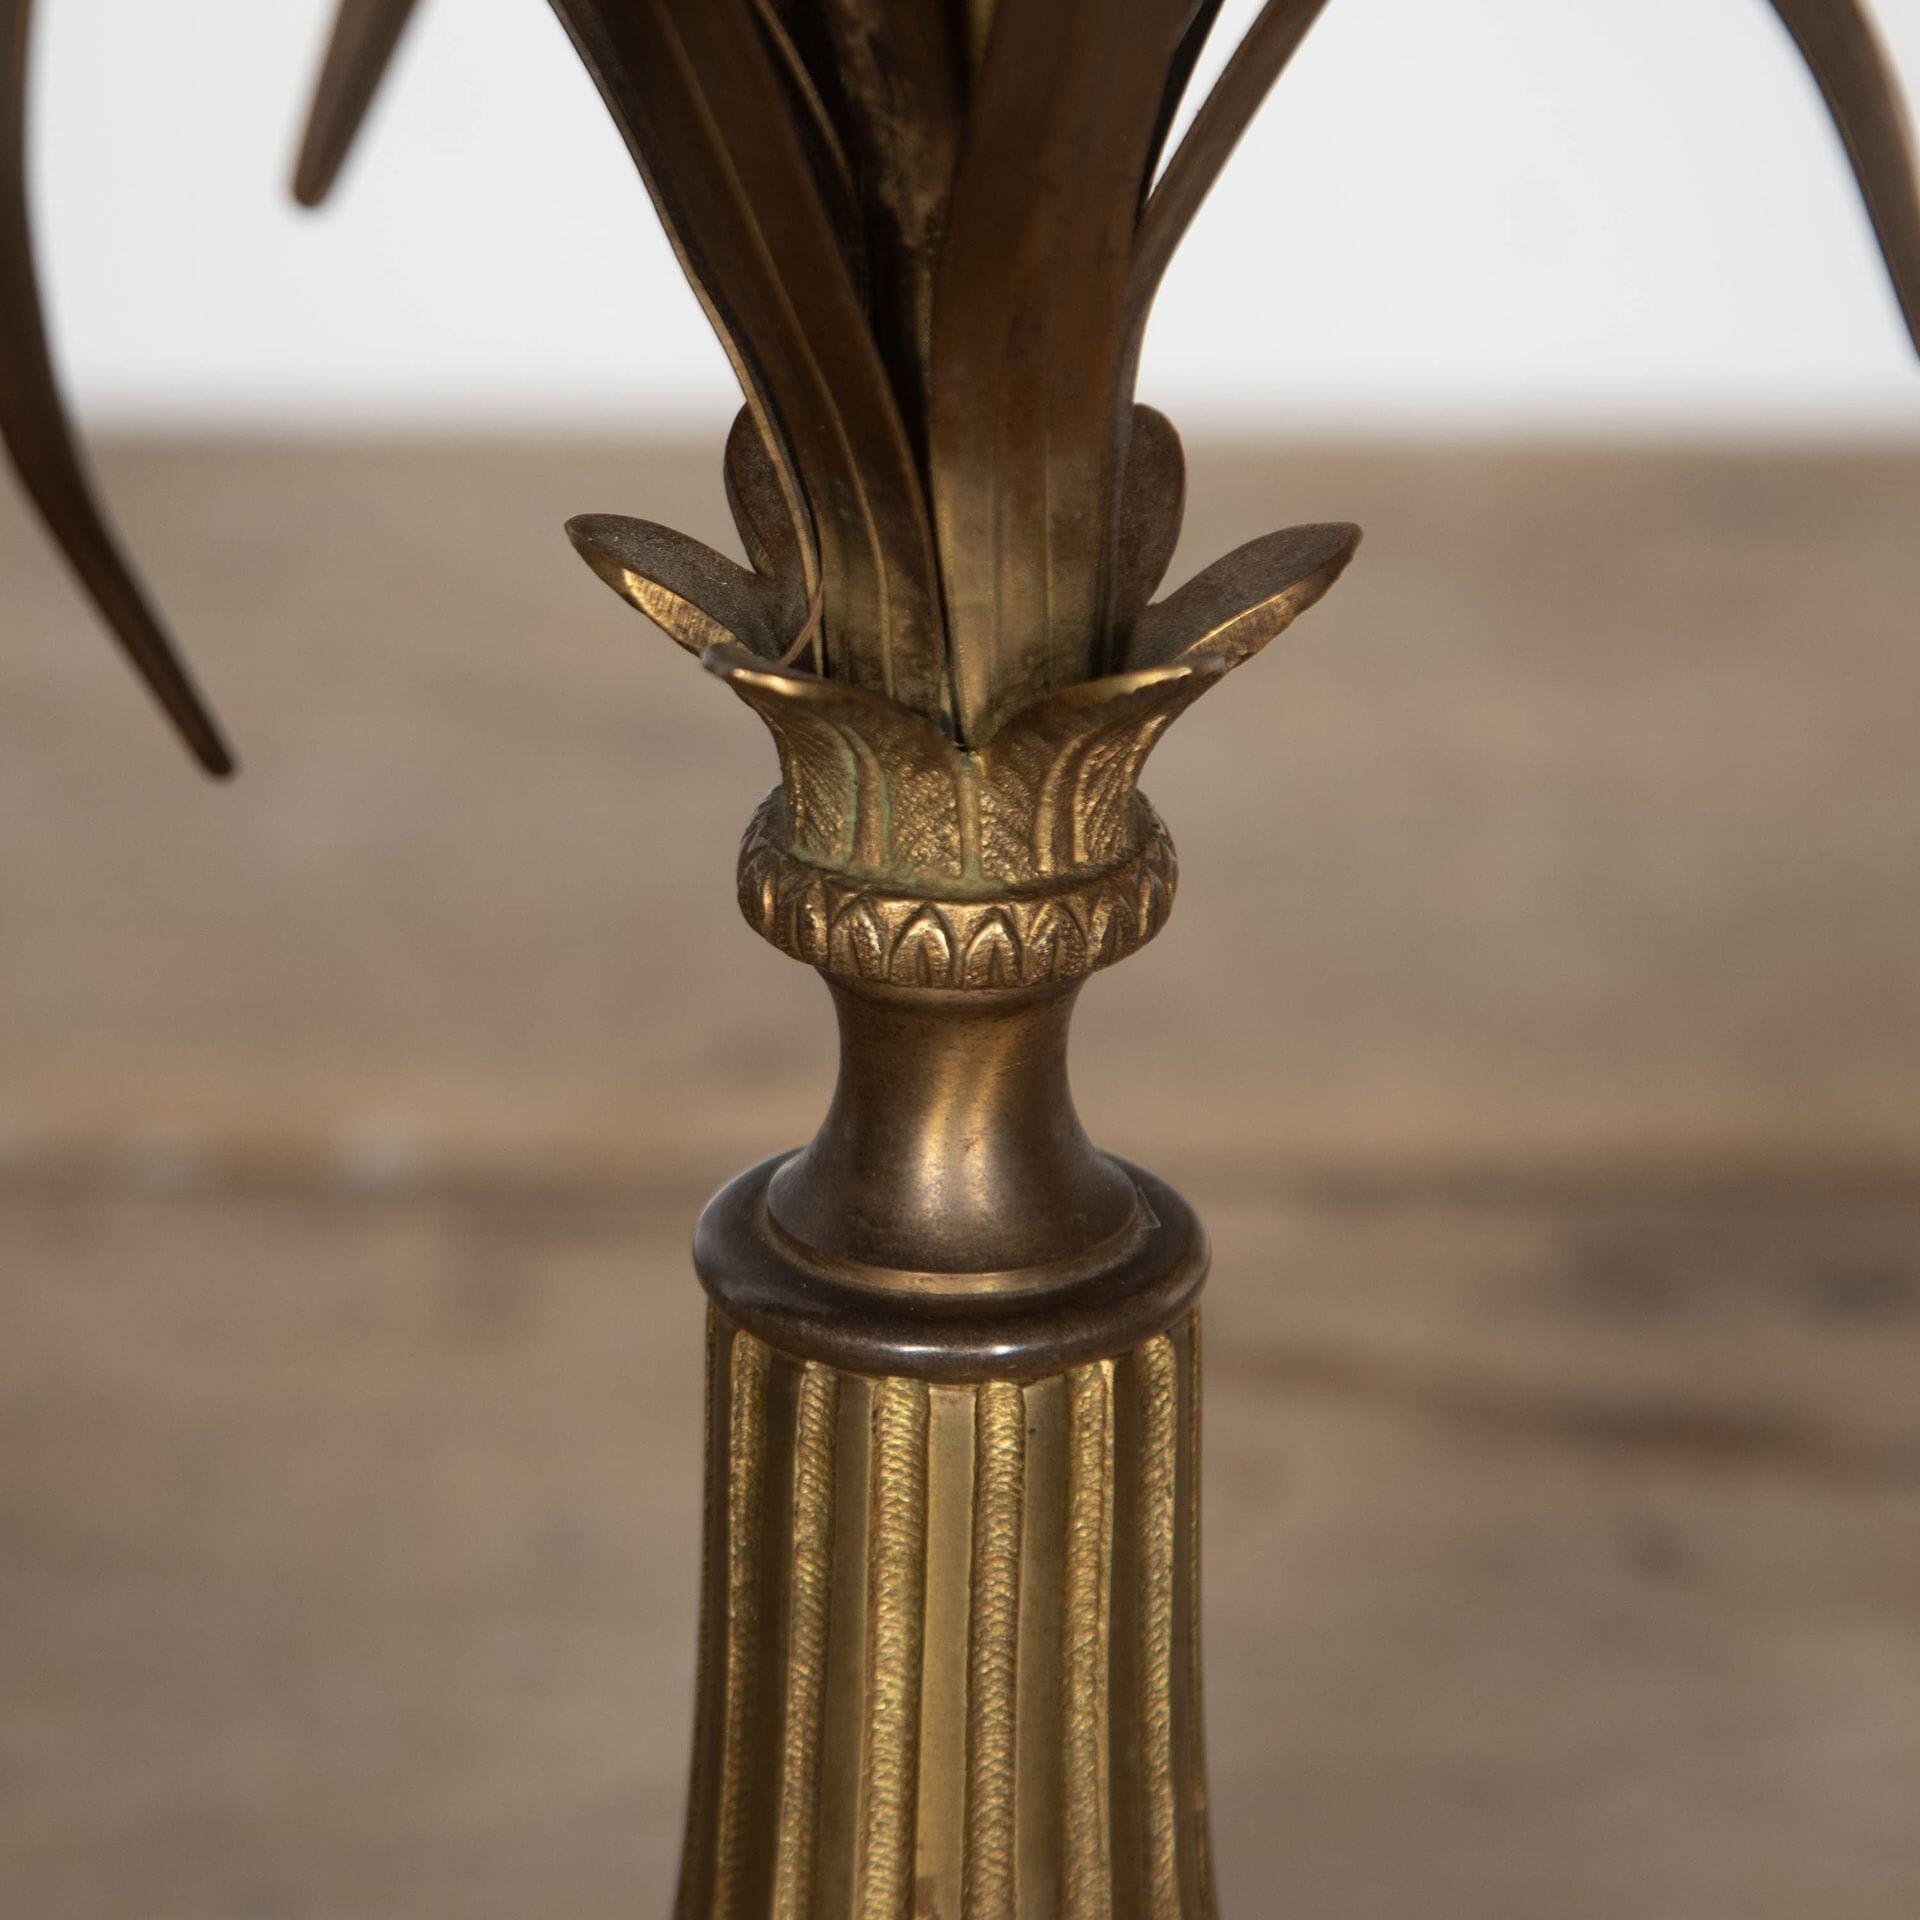 Bronze rarissime du 20ème siècle de la Maison Charles, (la plus célèbre fonderie de luminaires et de bronzes en France) comprenant l'abat-jour en bronze d'origine. Cet article a passé le test PAT conformément aux normes britanniques.